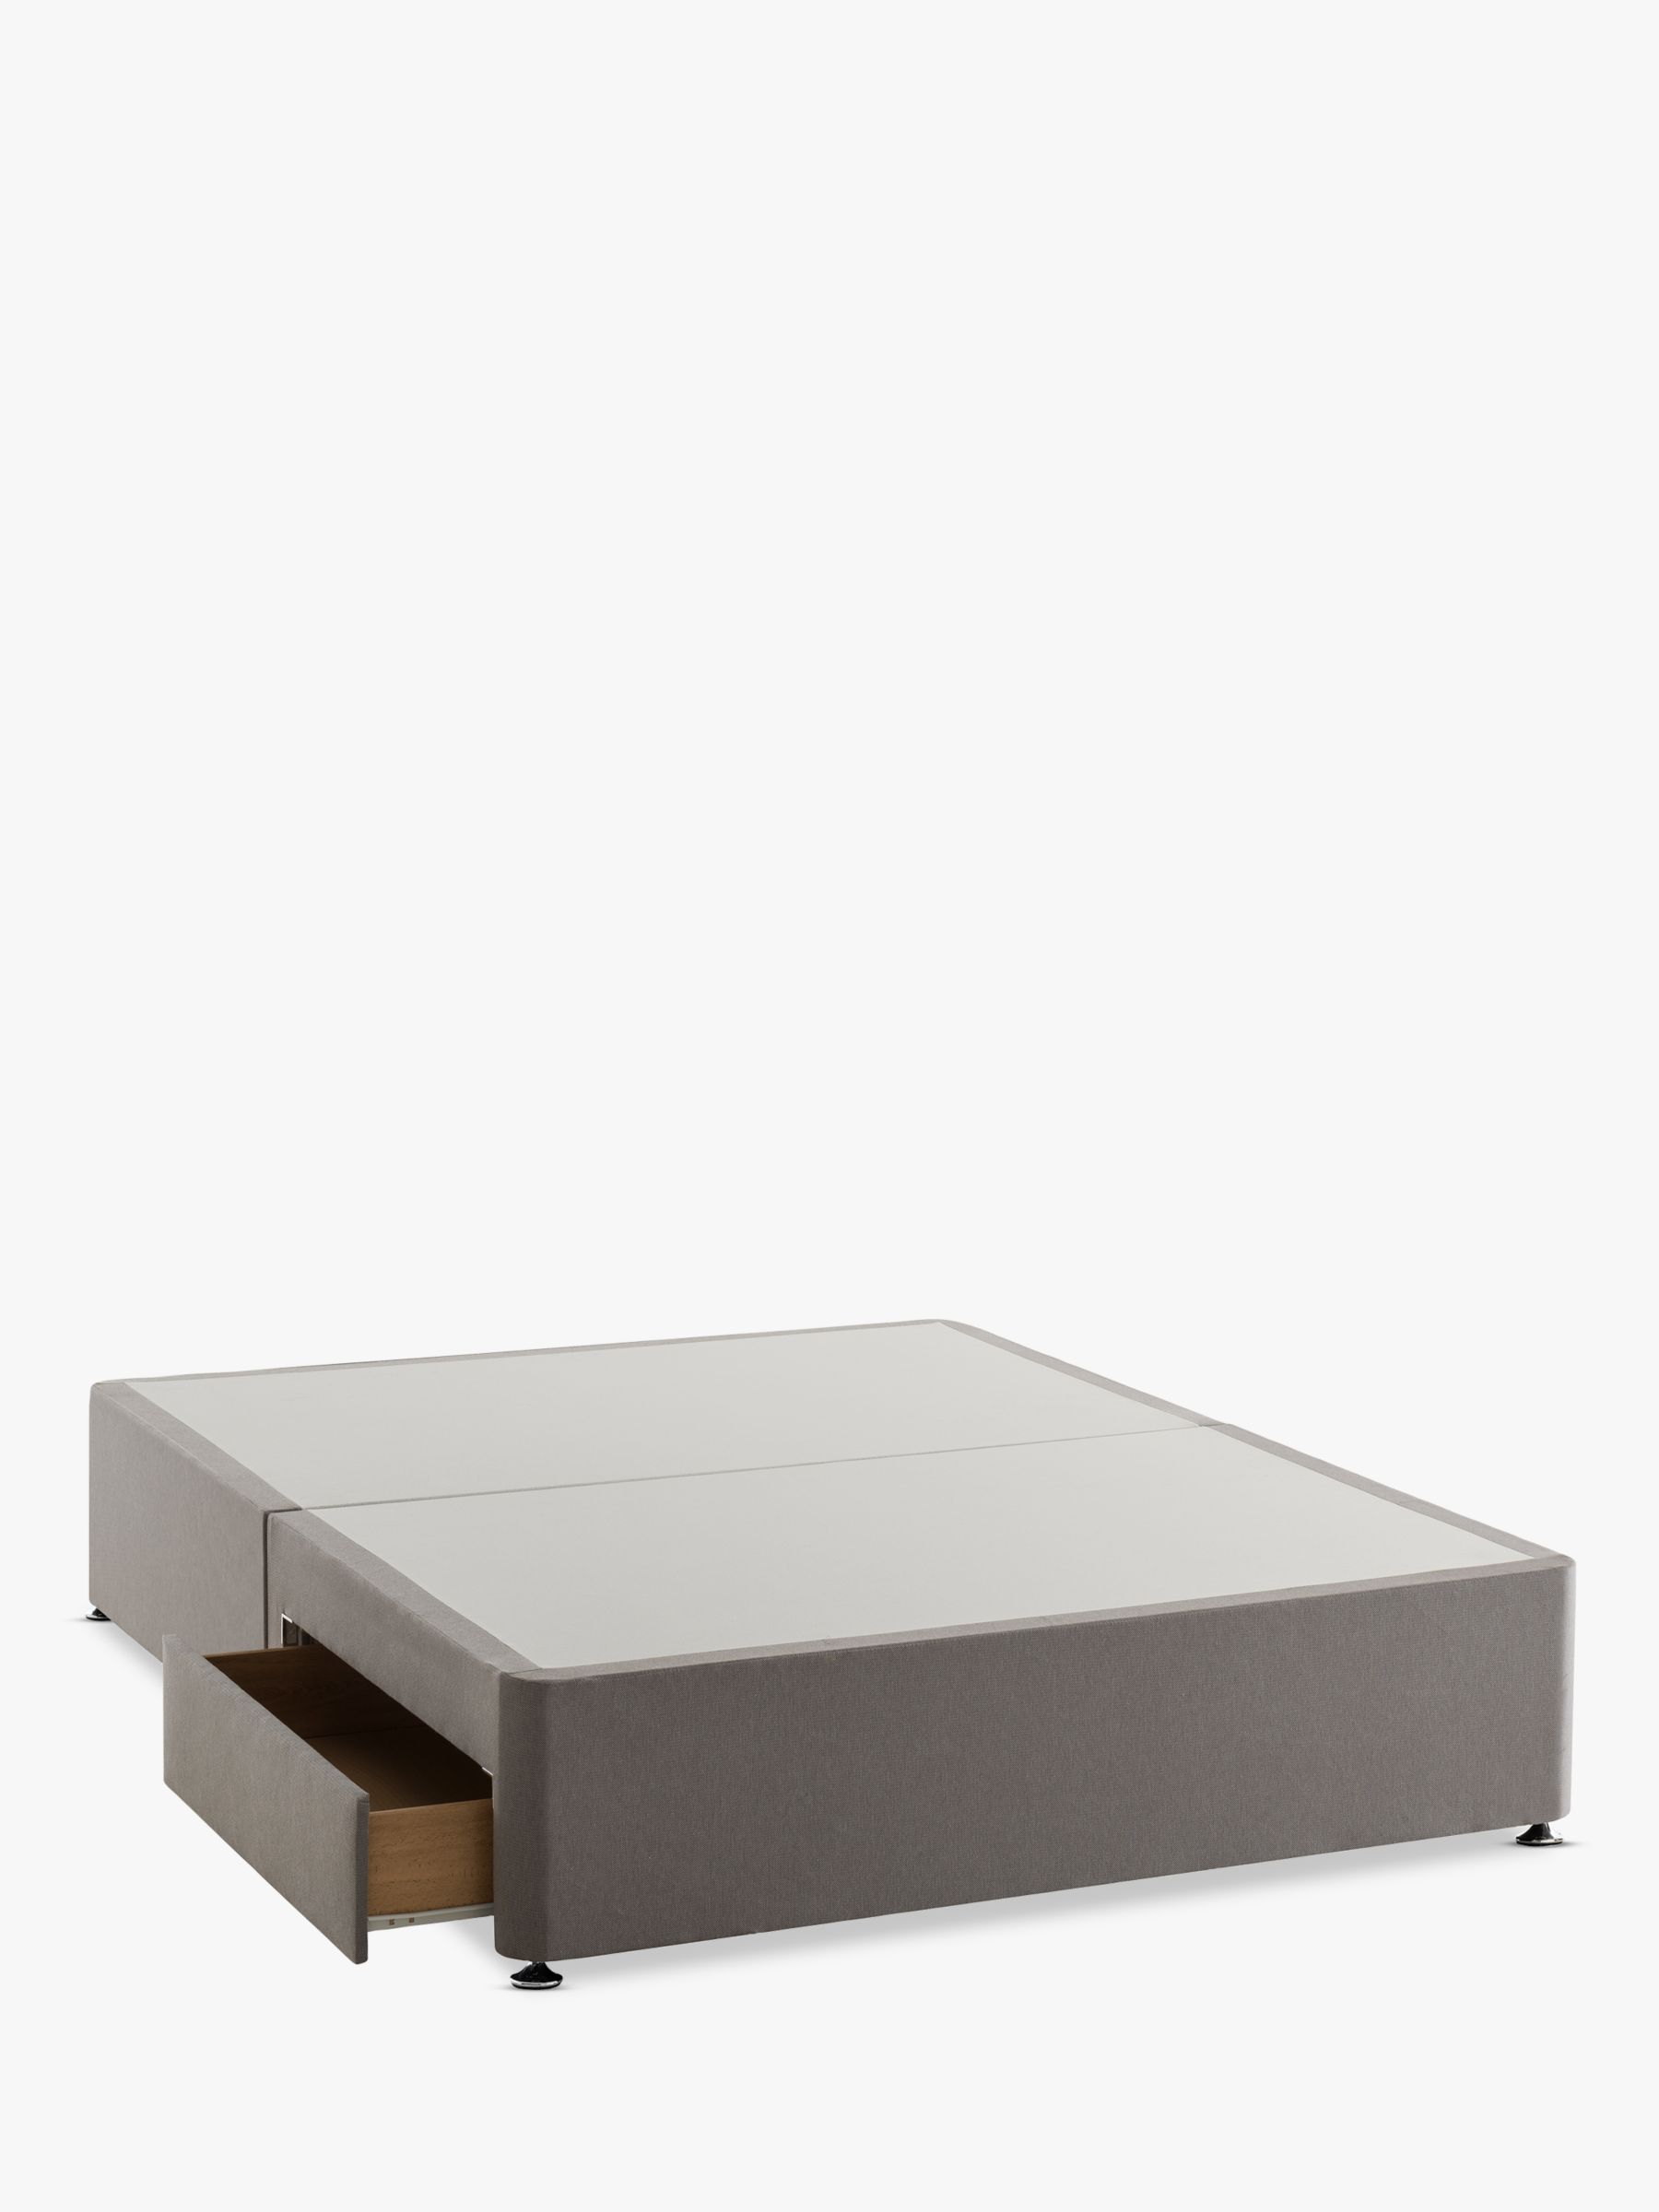 Photo of Silentnight non sprung 2 drawer divan storage bed double